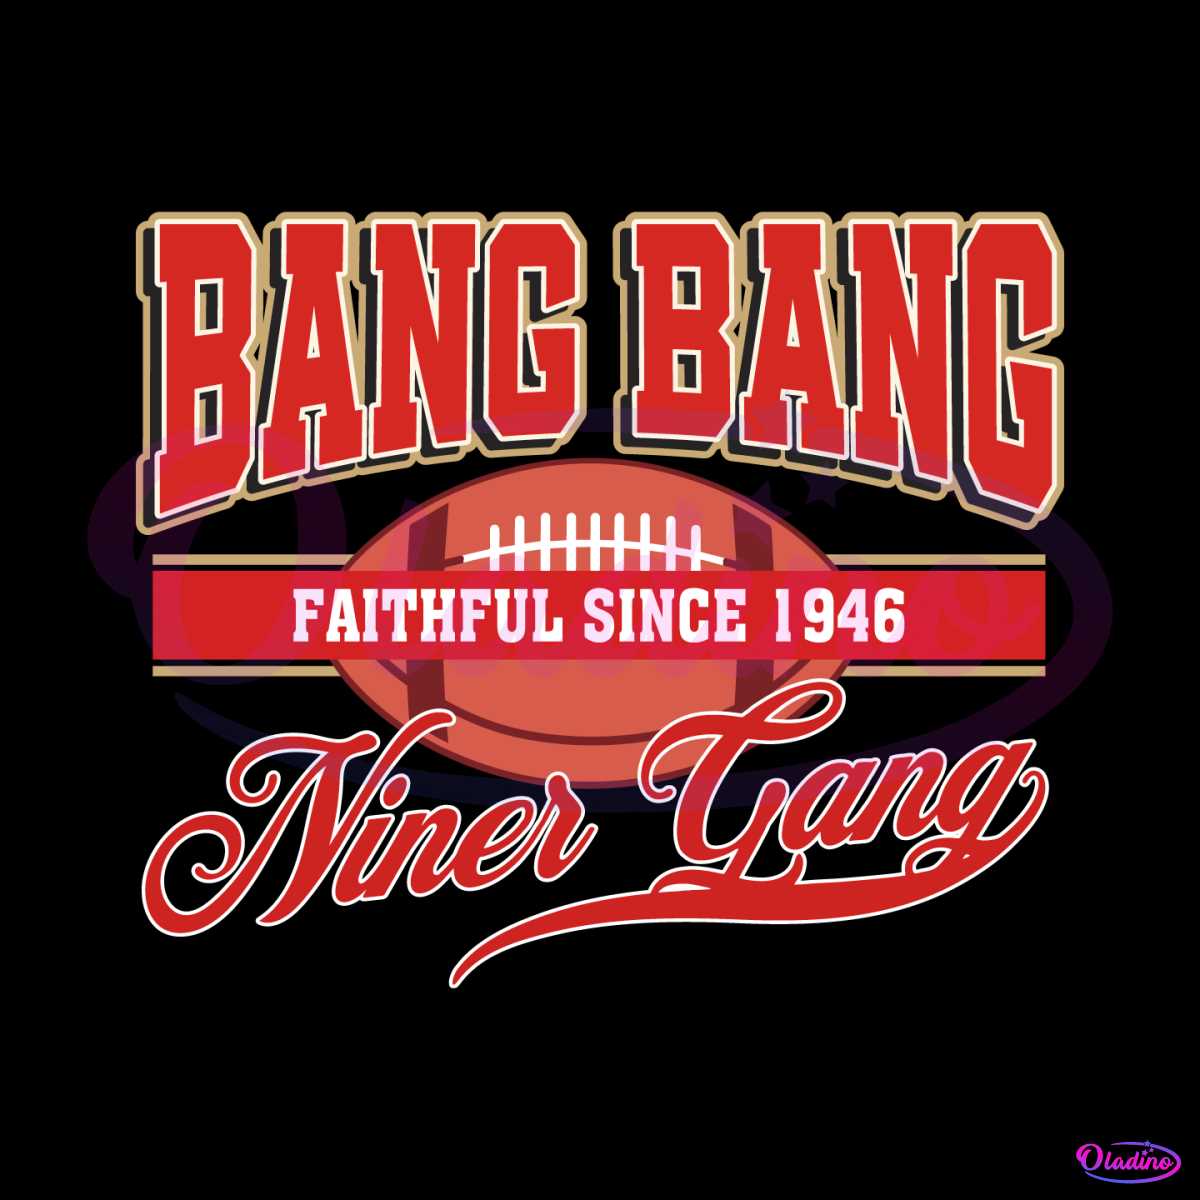 bang-bang-niner-gang-faithful-since-1946-svg